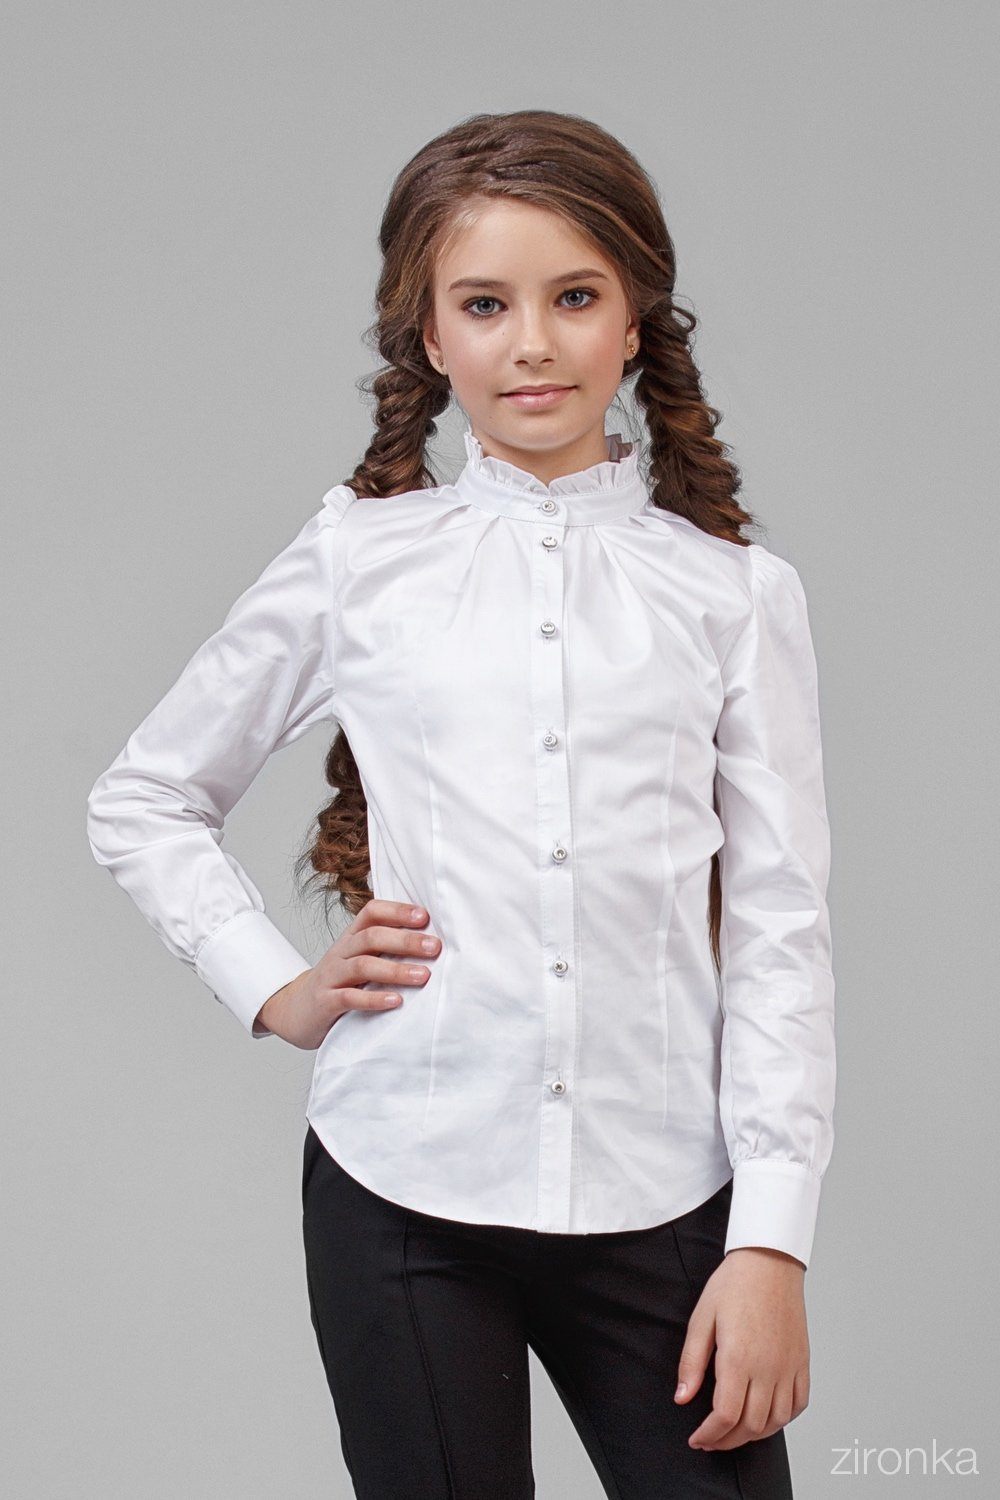 Рубашка белая Школьная для девочки